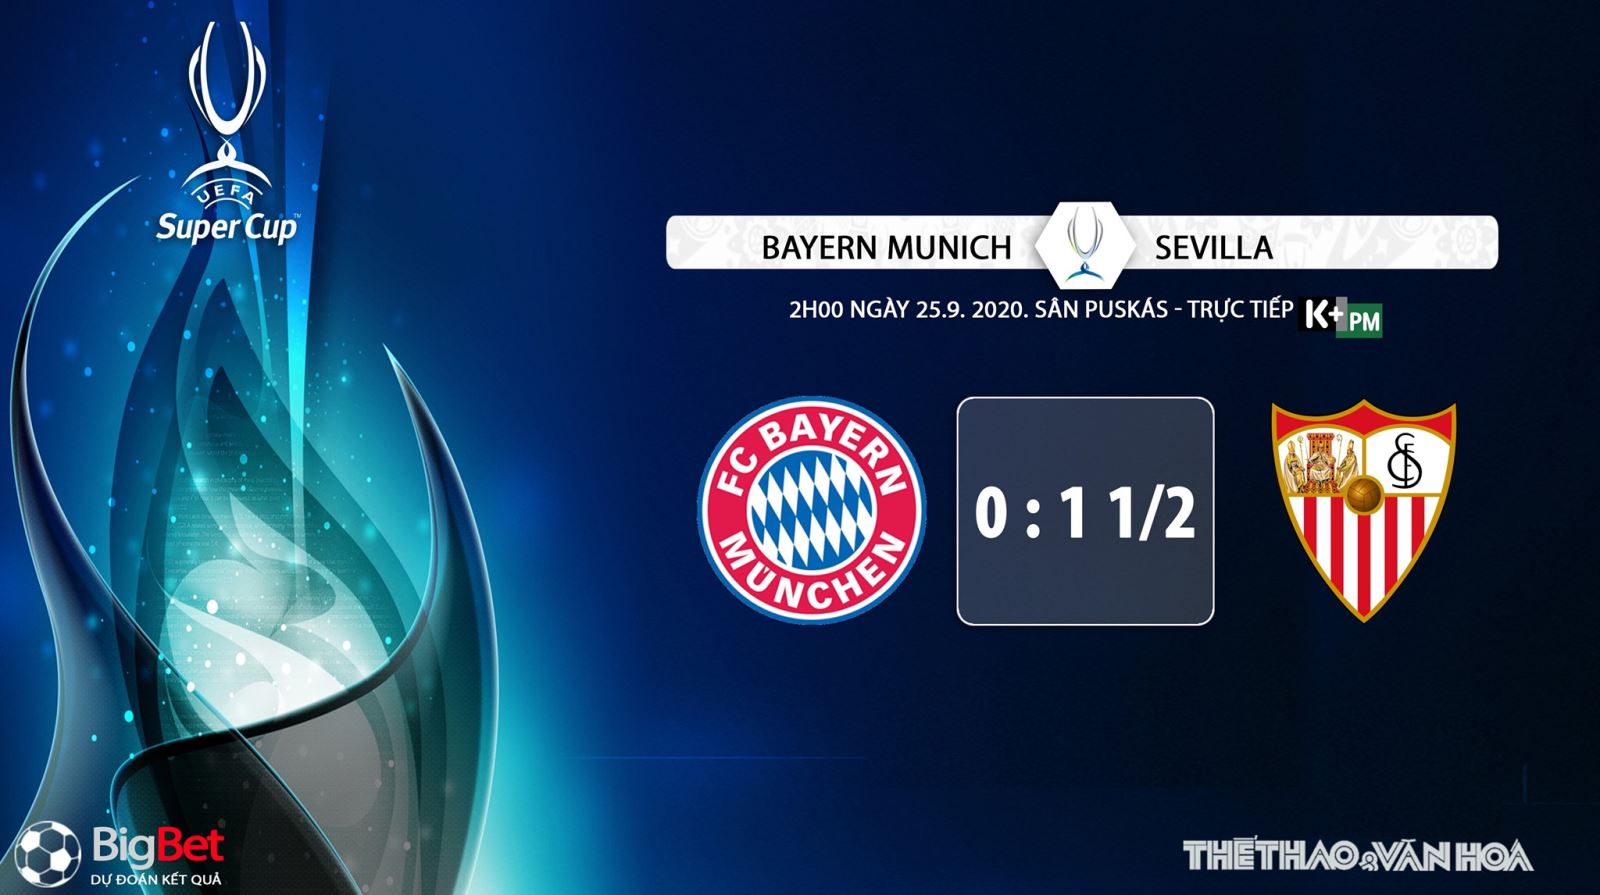 Bayern Munich vs Sevilla, Bayern Munich, Sevilla, nhận định bóng đá, trực tiếp bóng đá, nhận định bóng đá Bayern Munich vs Sevilla, kèo bóng đá Bayern Munich vs Sevilla, kèo thơm